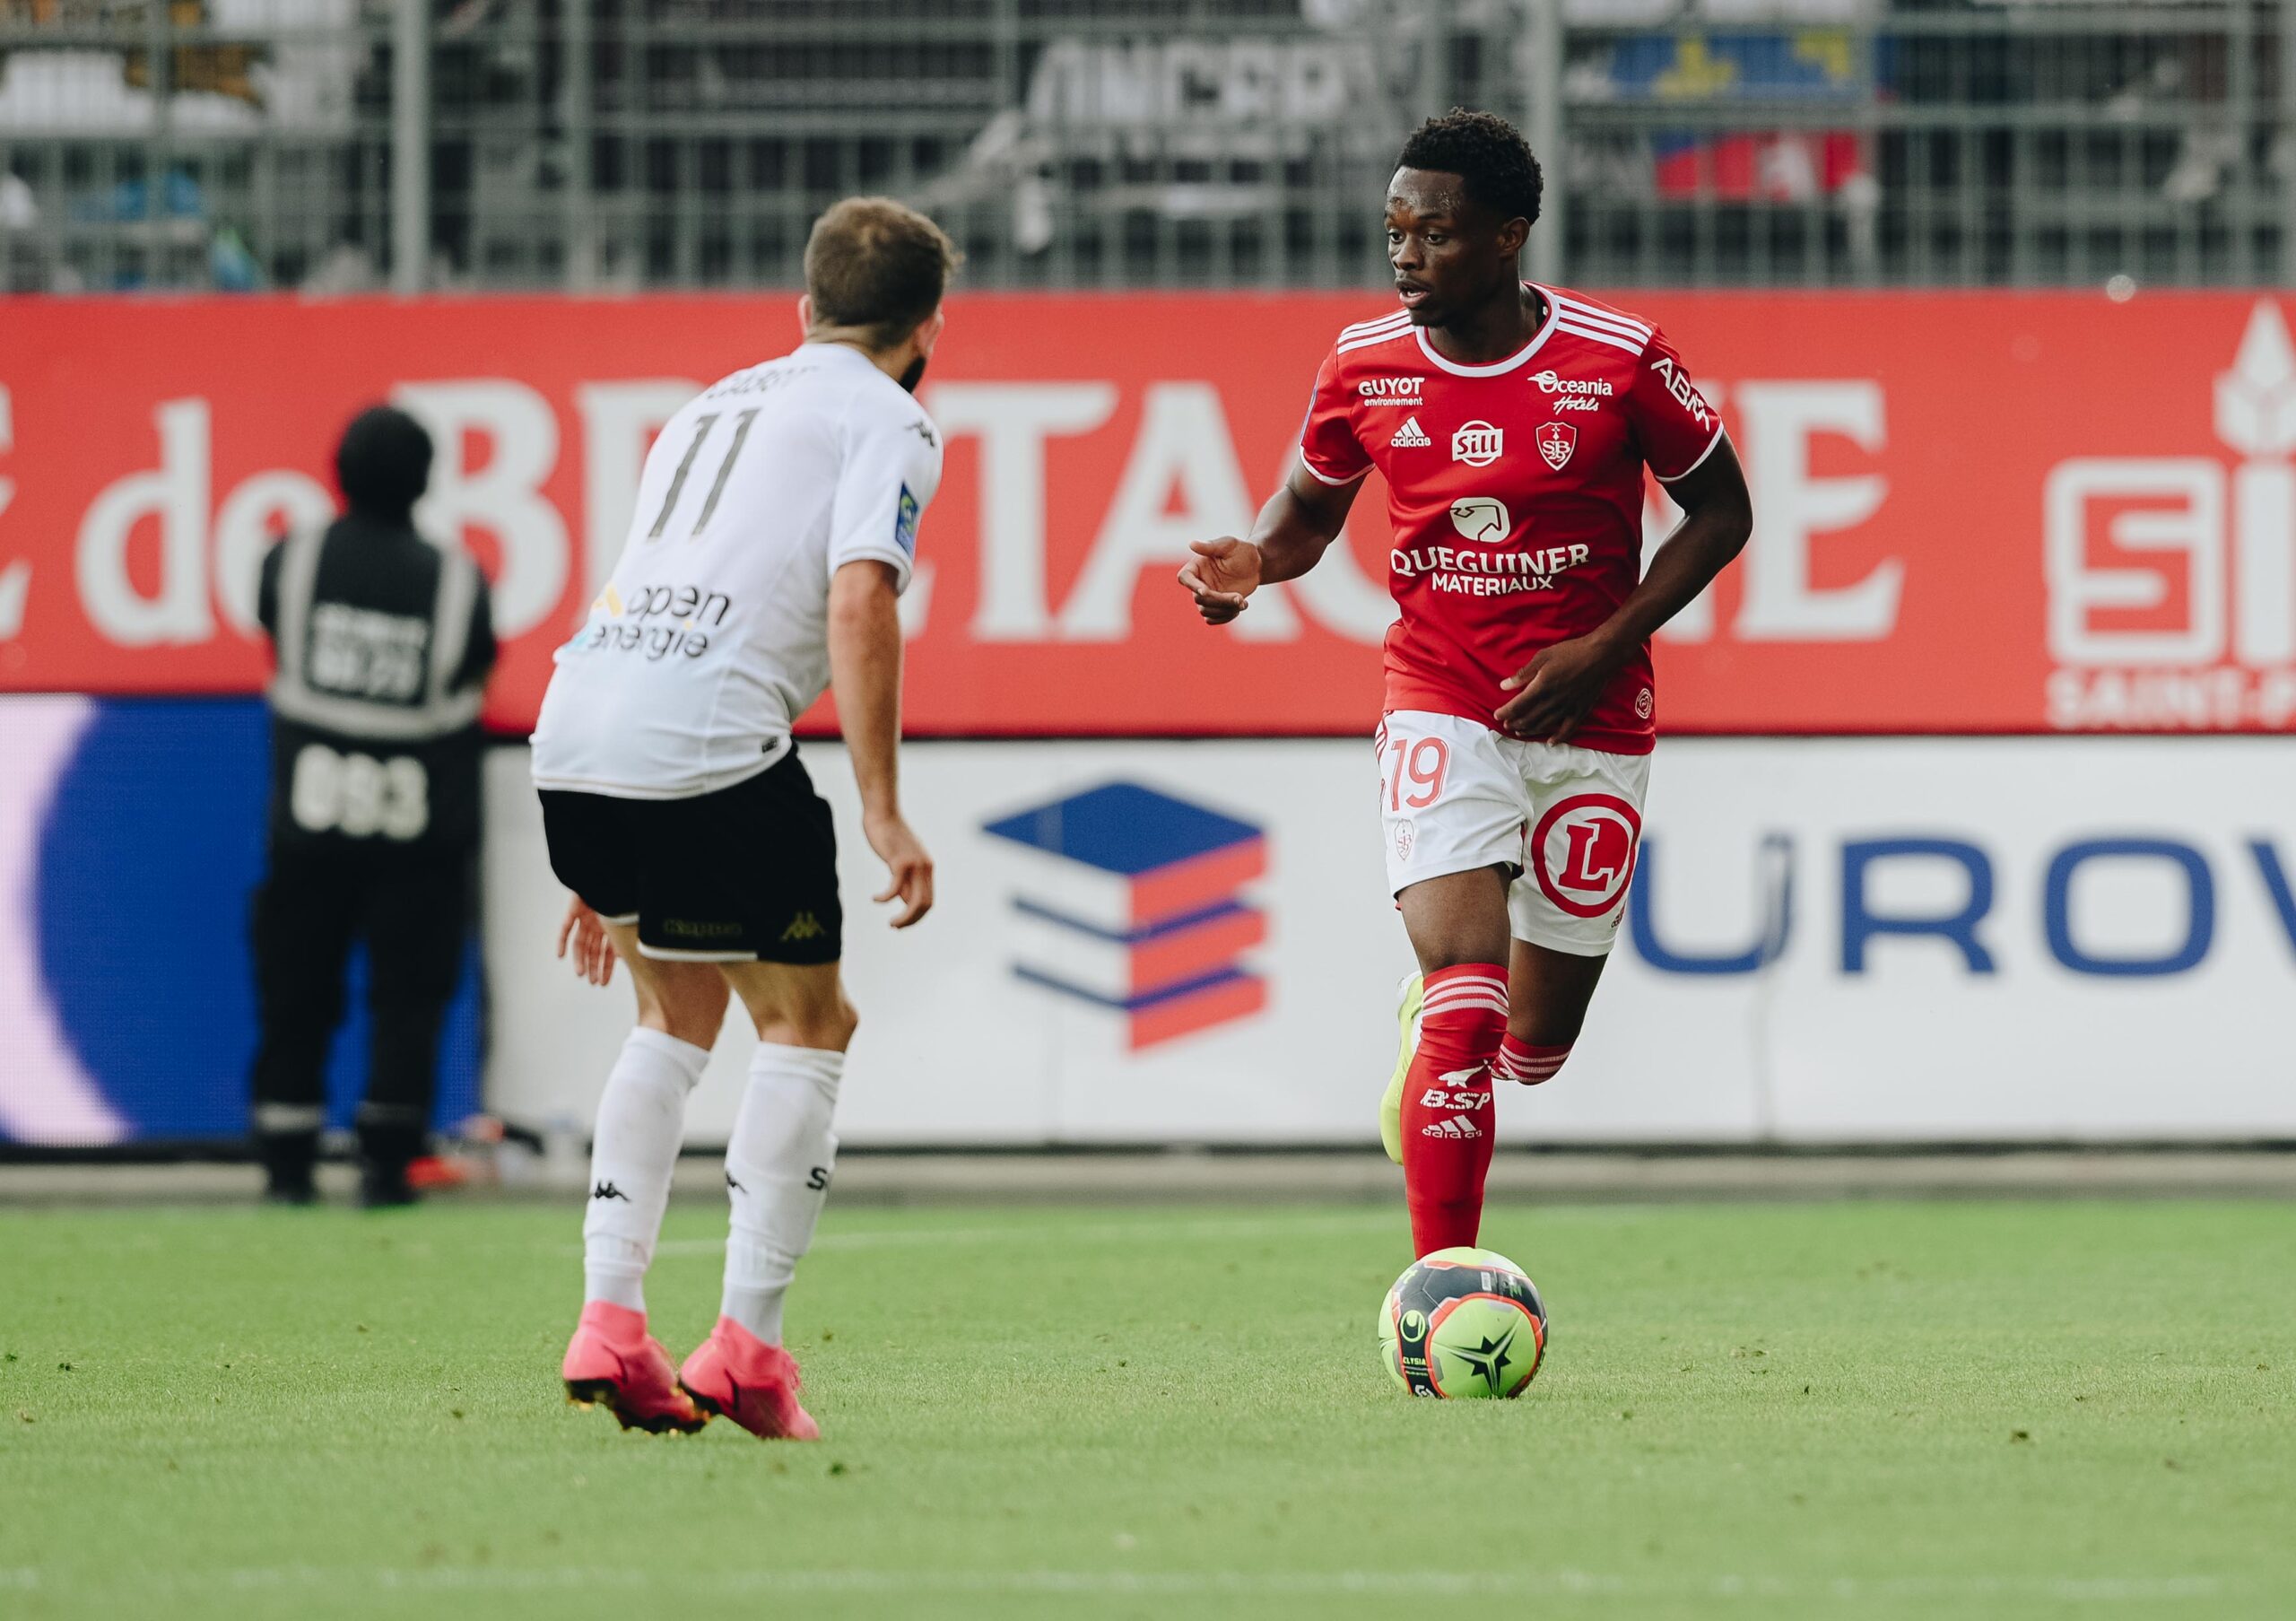 Warmed Omari, Les débuts en Ligue 1 des jeunes Rafiki Saïd et Warmed Omari, Comoros Football 269 | Portail du football des Comores